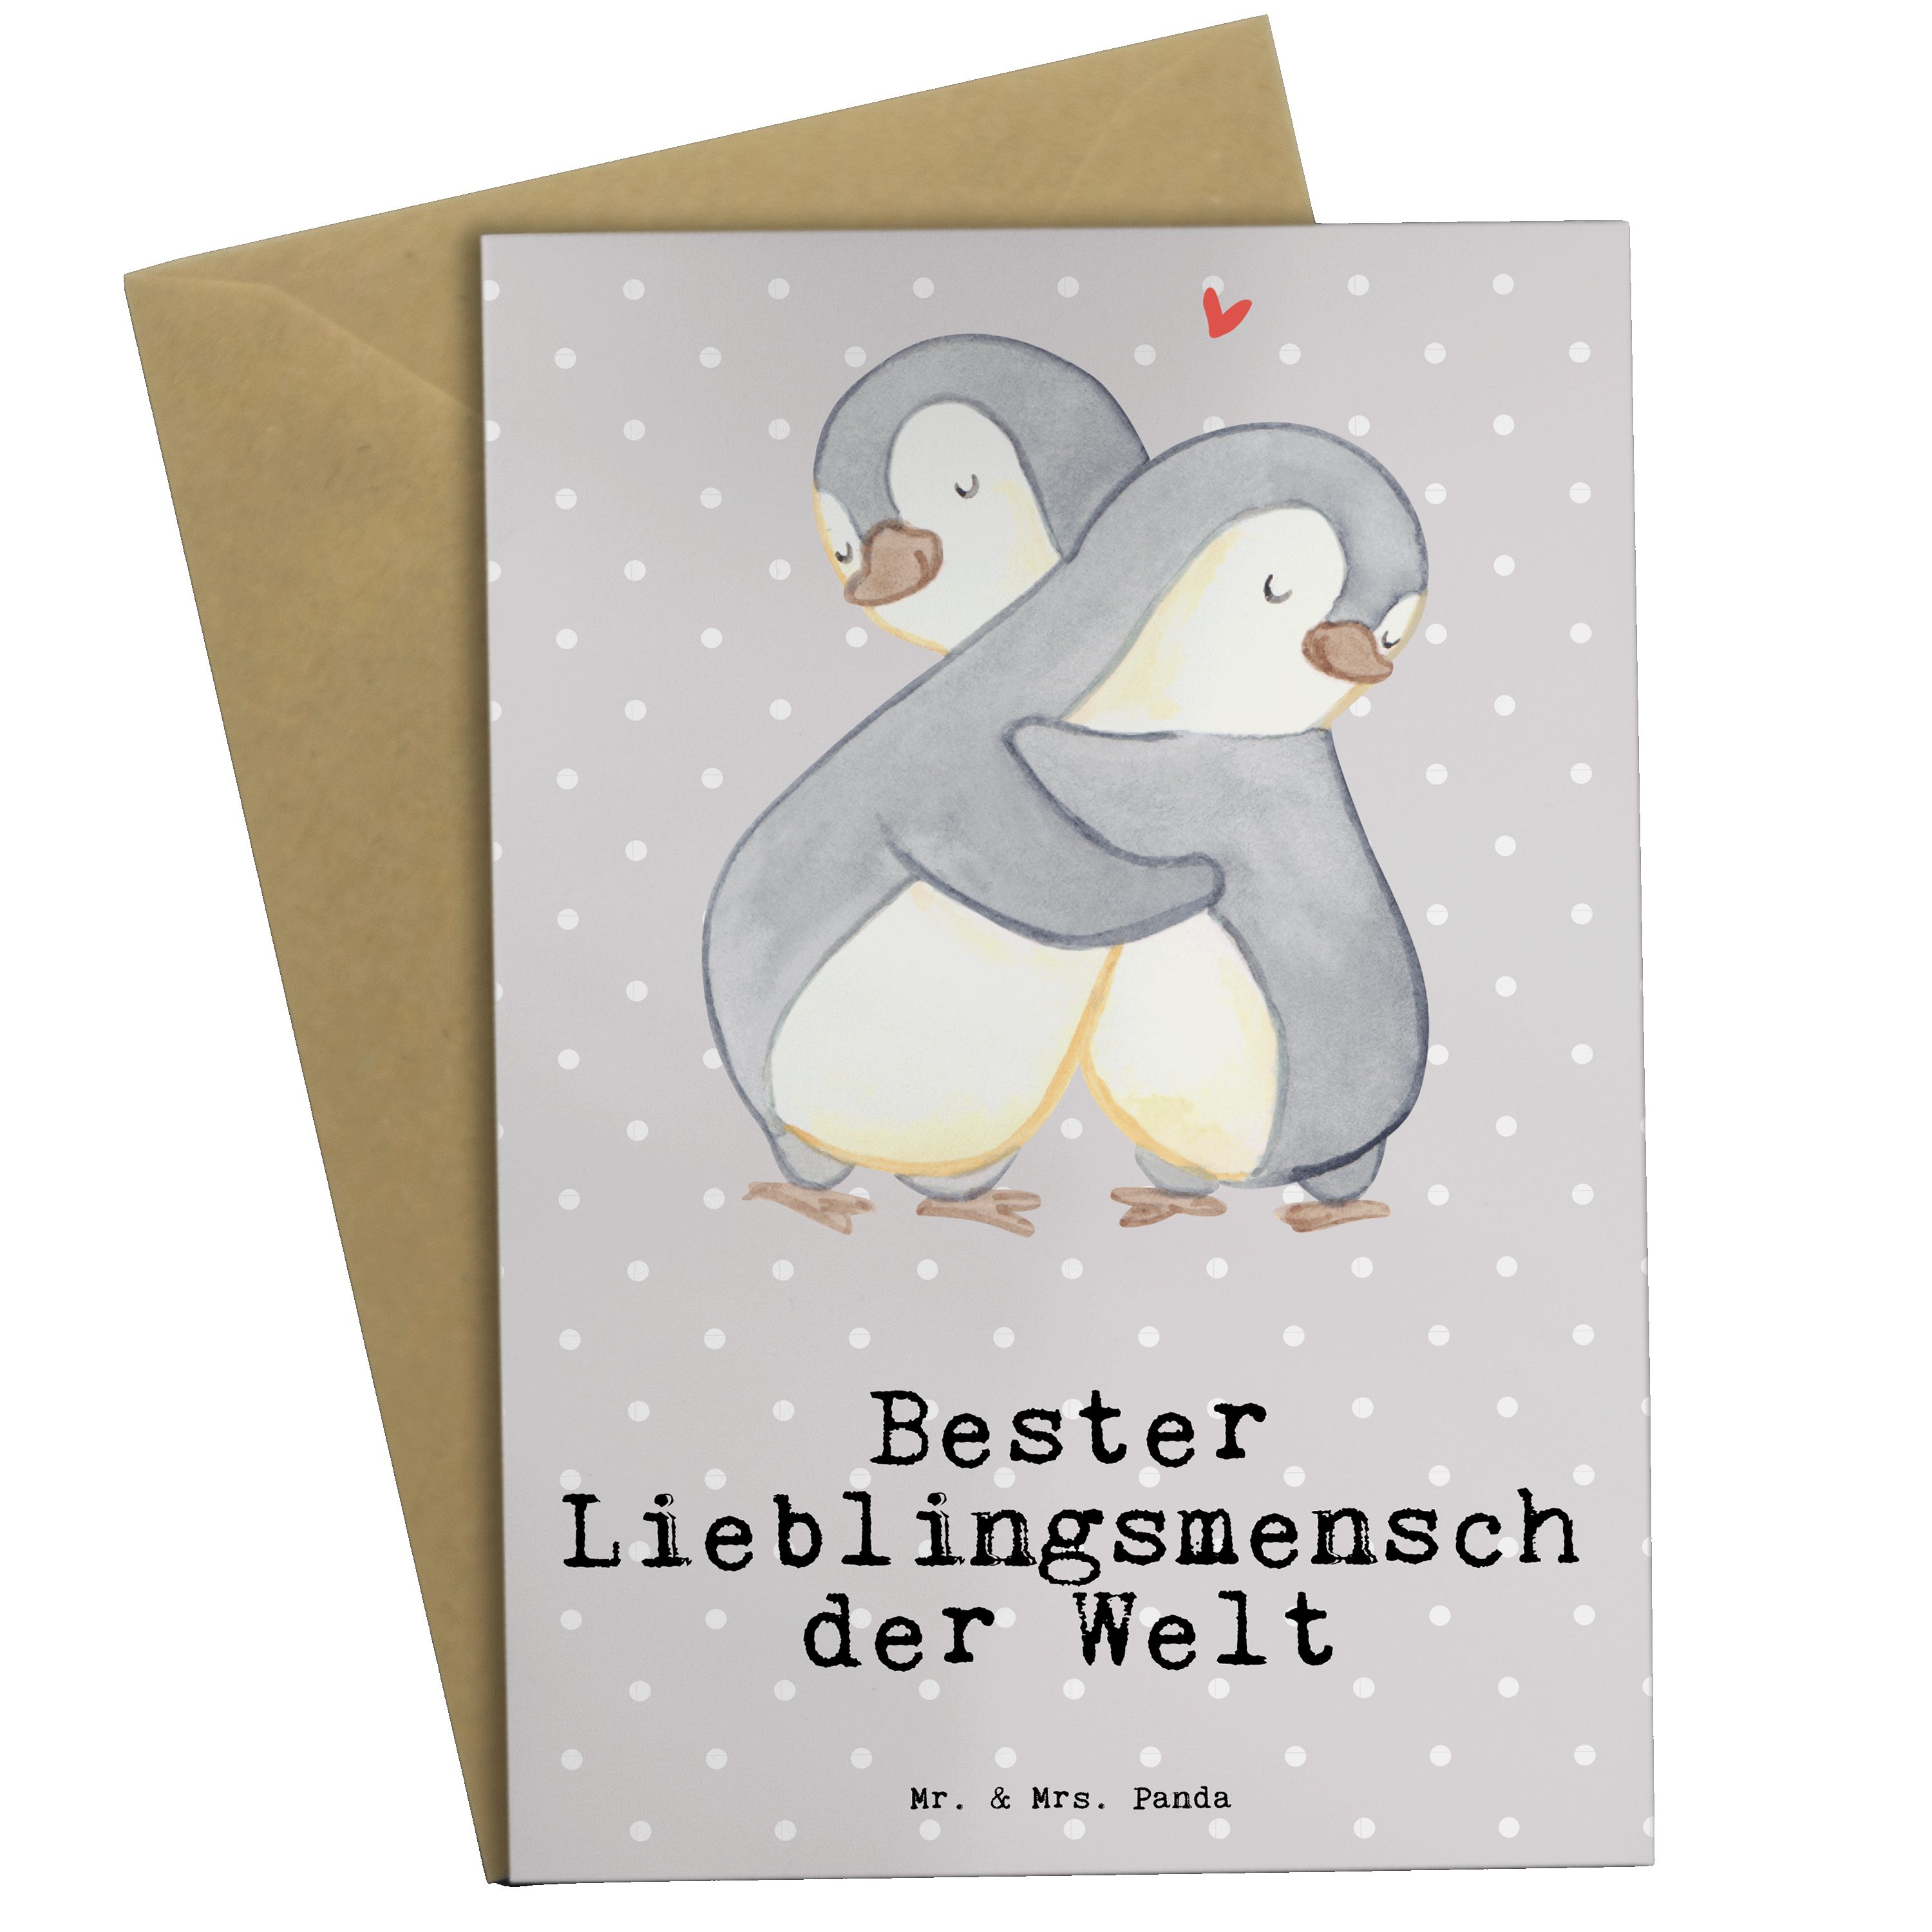 Mr. & Mrs. Panda Grußkarte Pinguin Bester Lieblingsmensch der Welt - Grau Pastell - Geschenk, Gl